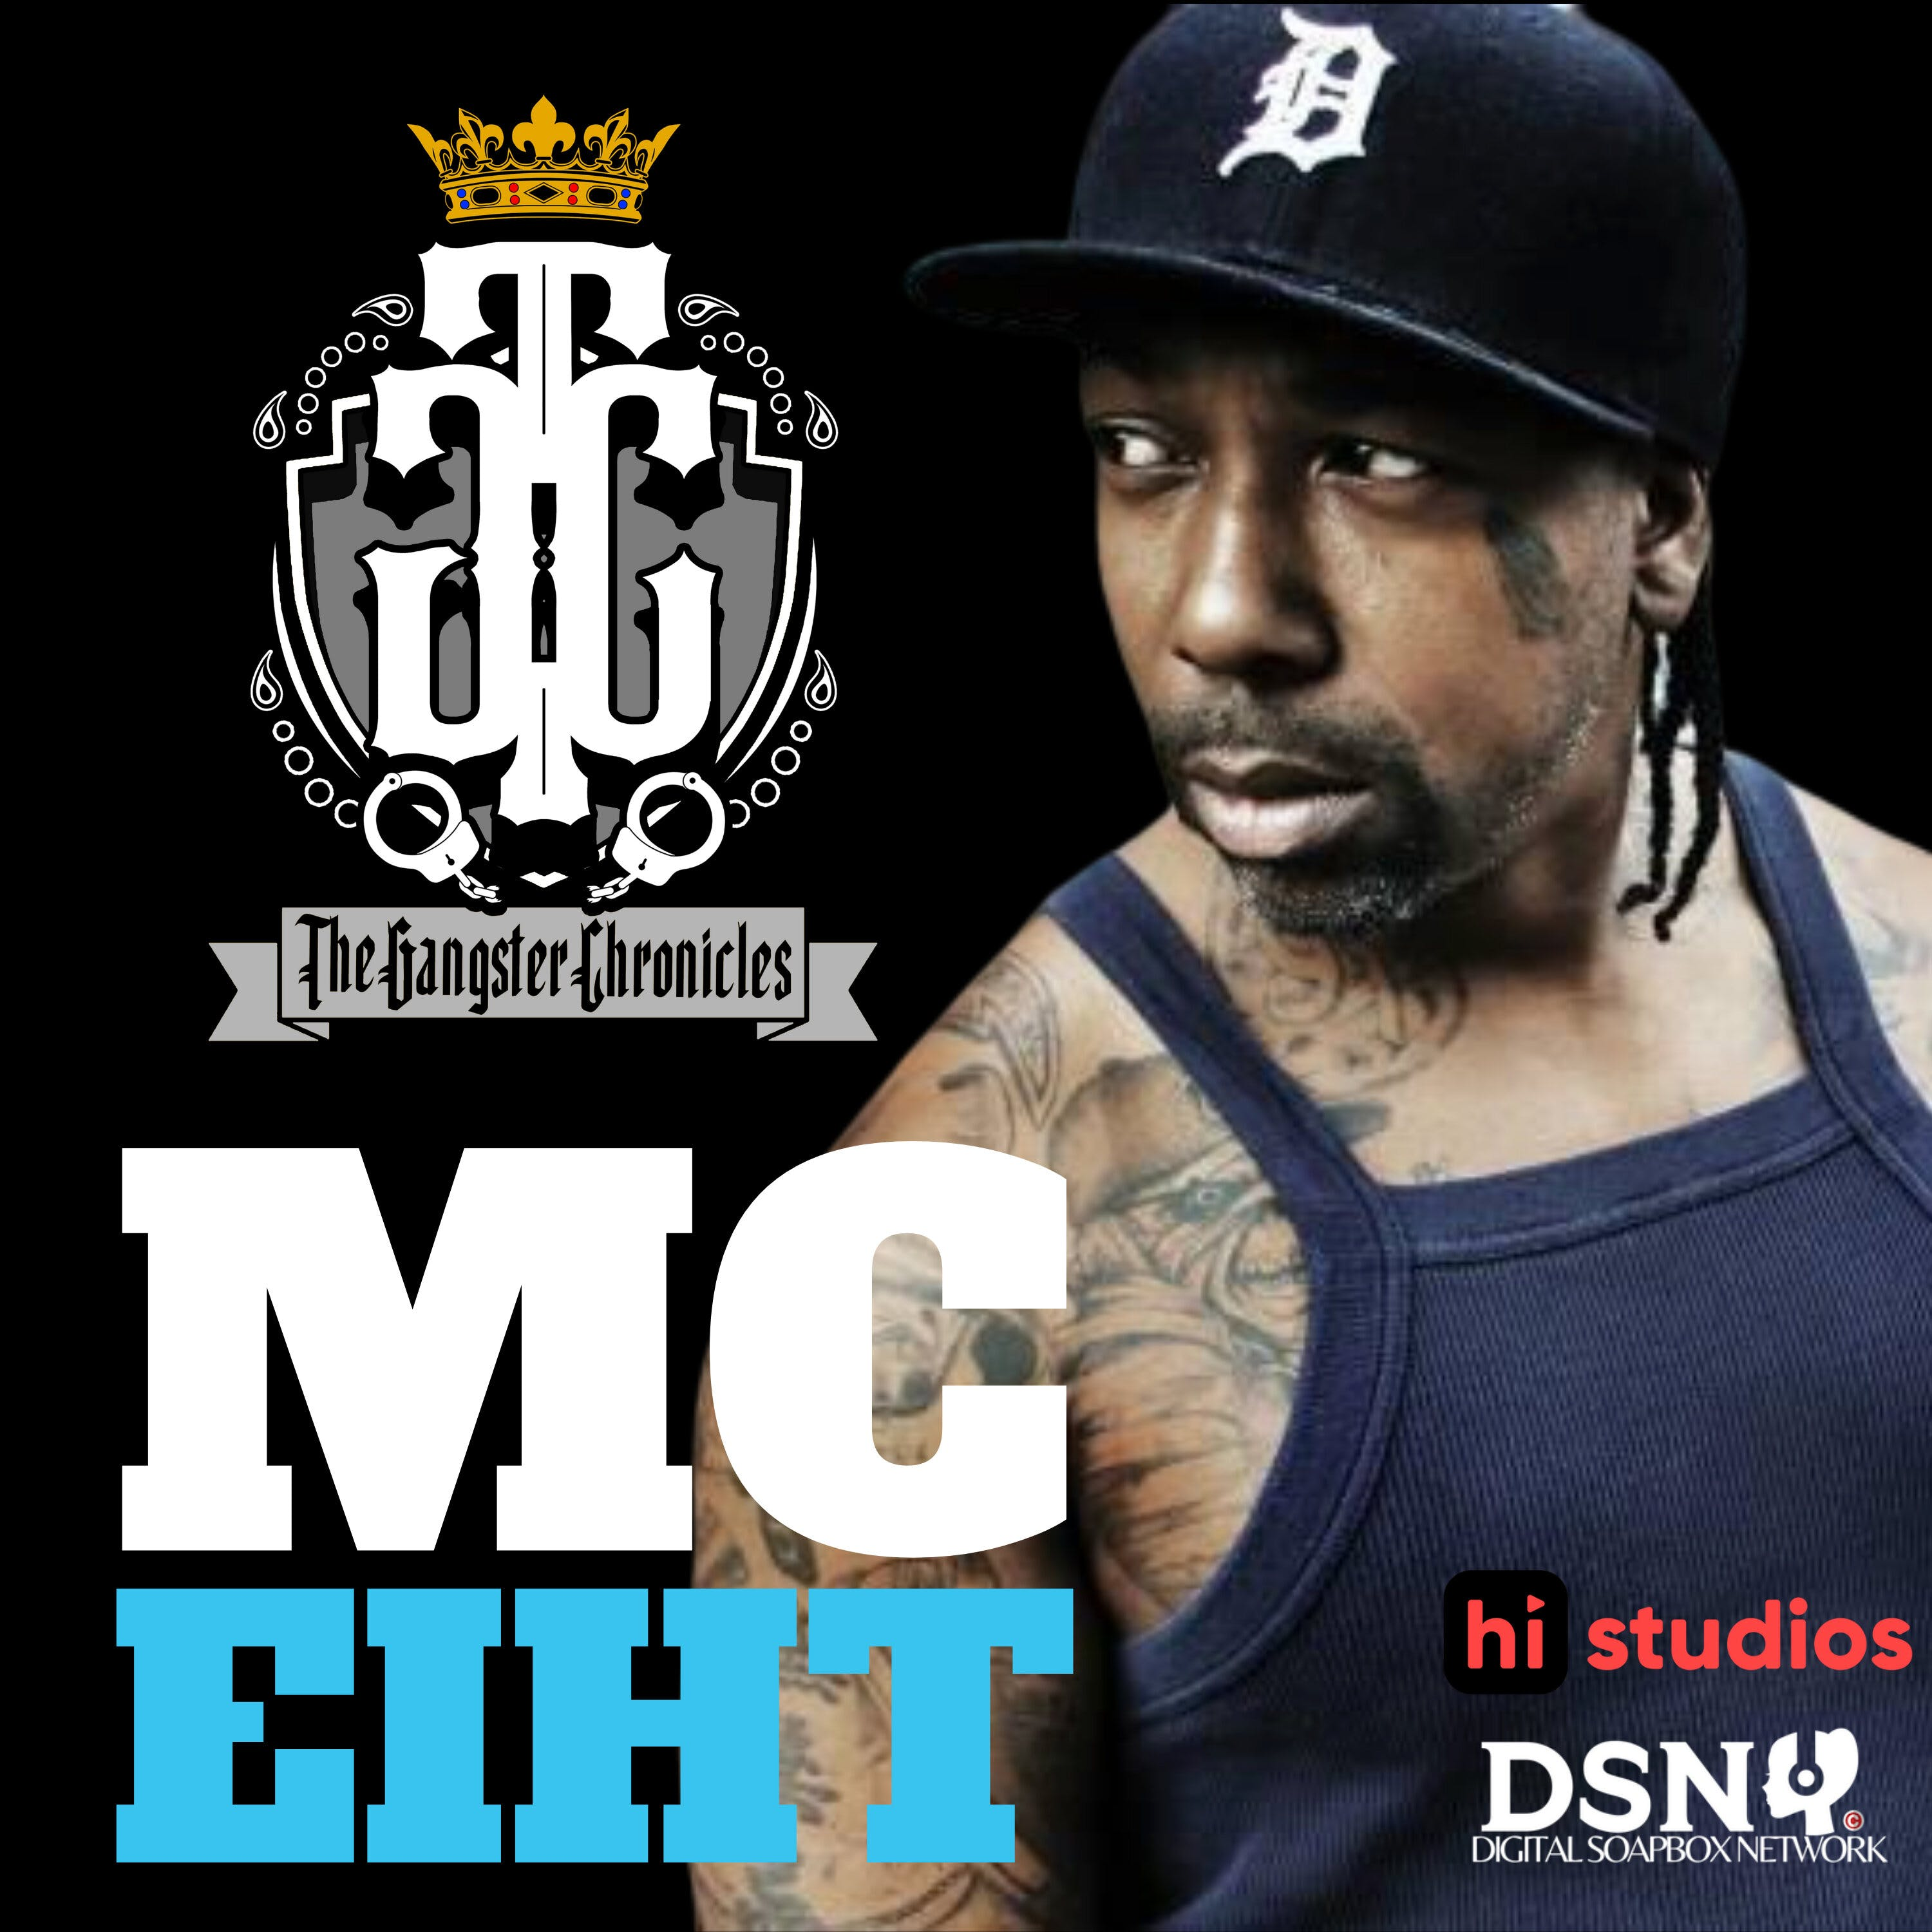 The Making of MC Eiht's Streiht Up Menace